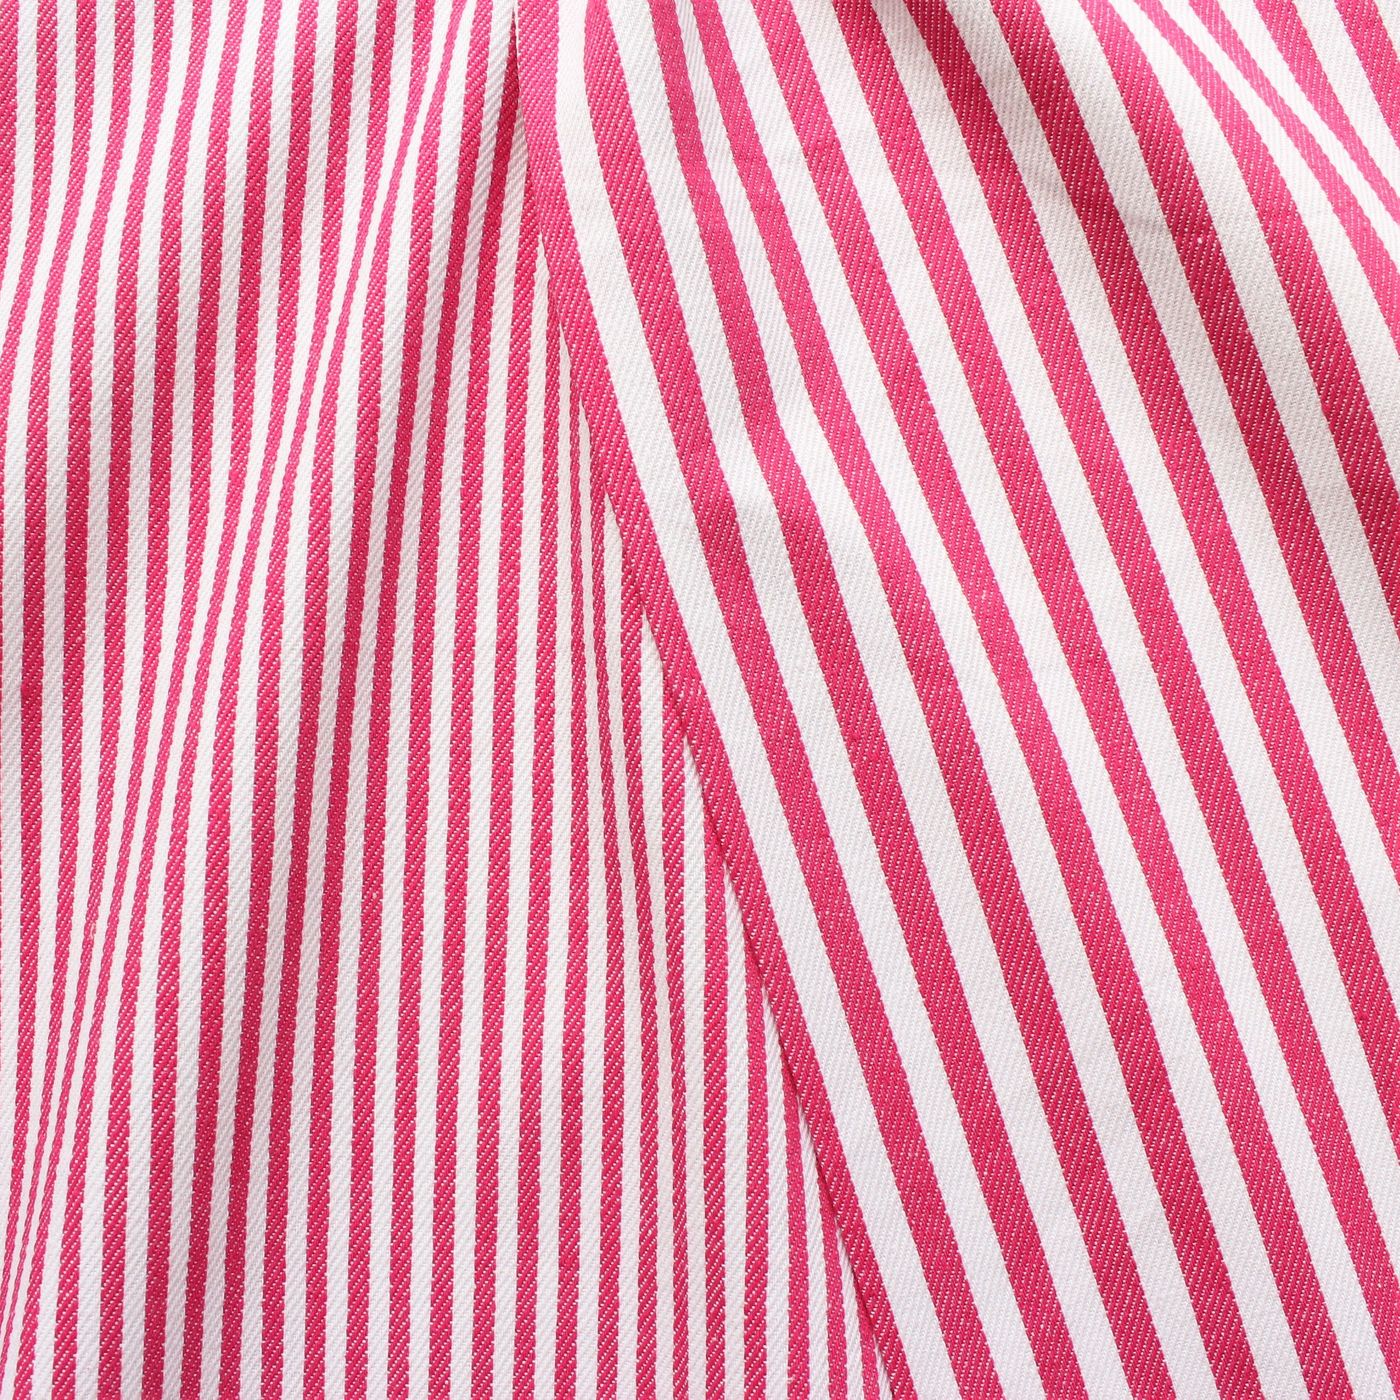 Baumwolle Denim Jeans Stoff Streifen Pink-Weiss